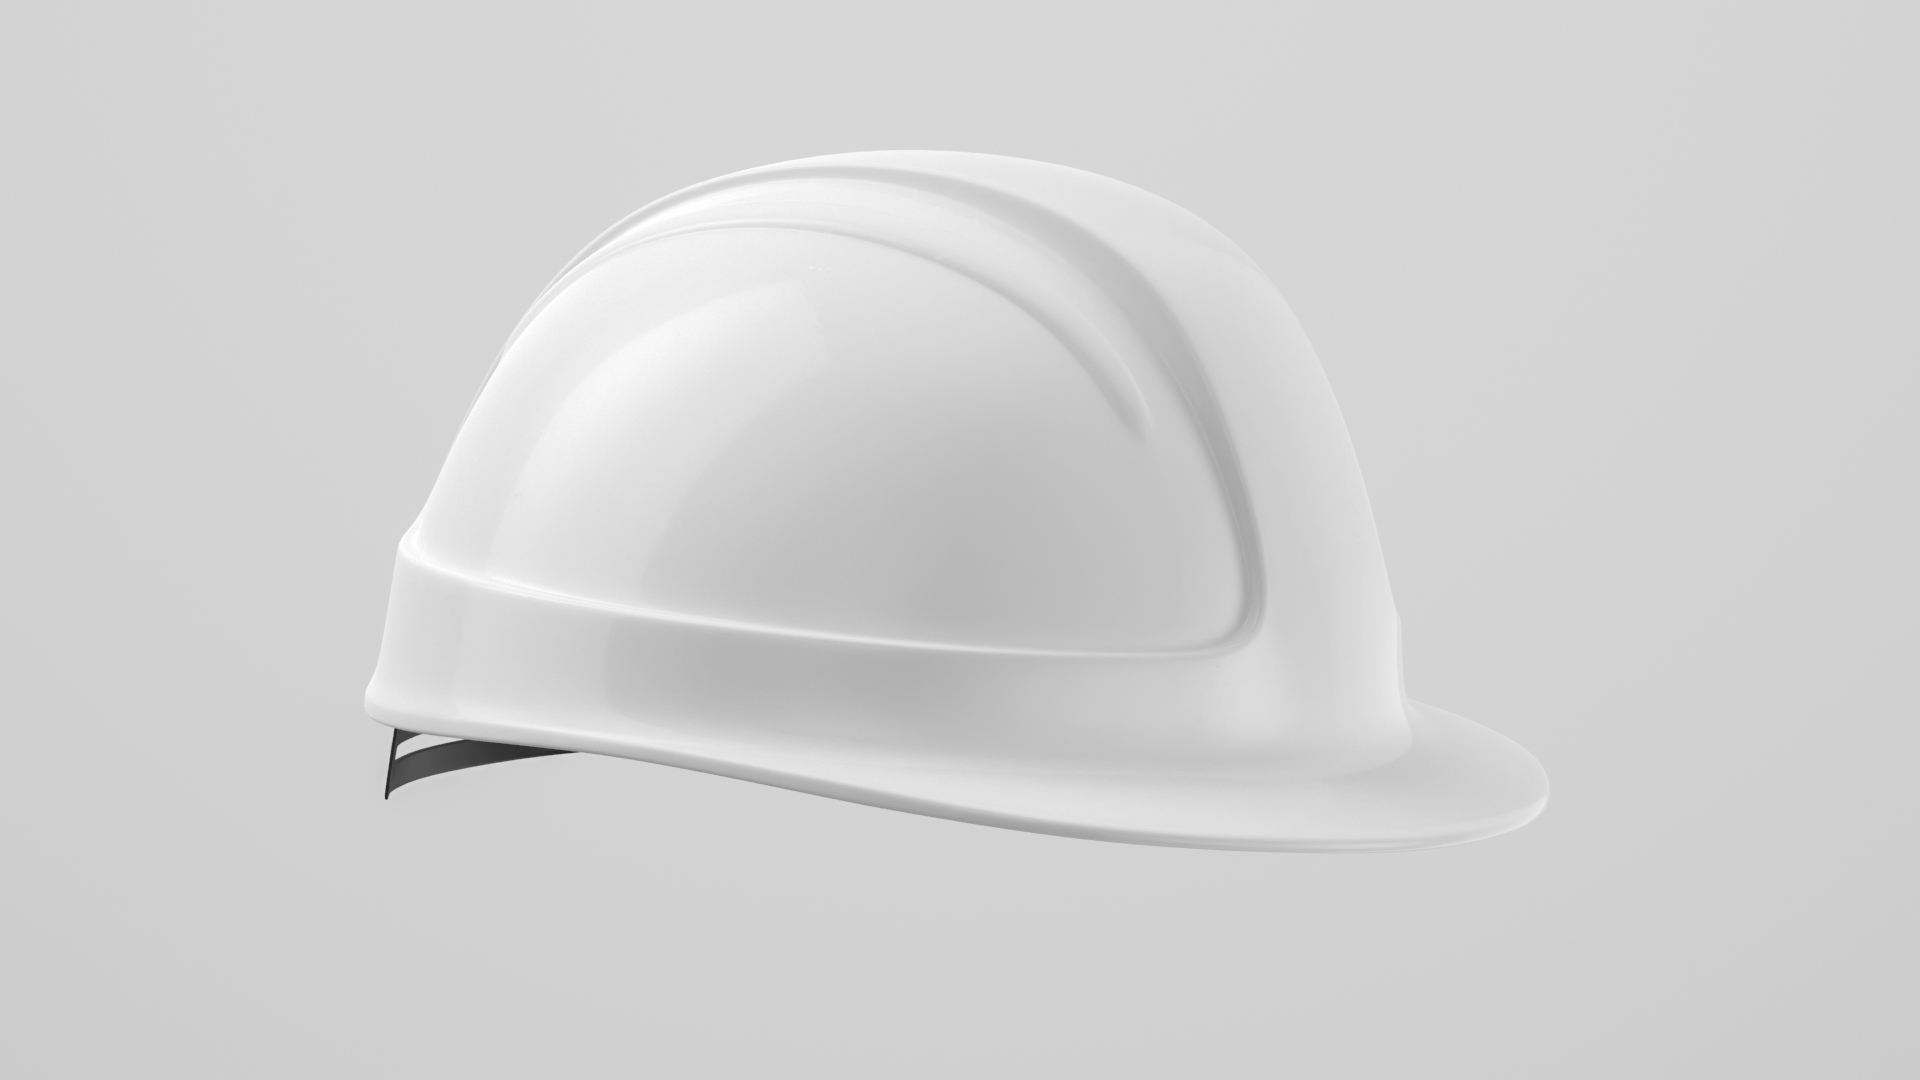 Hard Hat Safety Helmet 03 3D model - TurboSquid 1952800